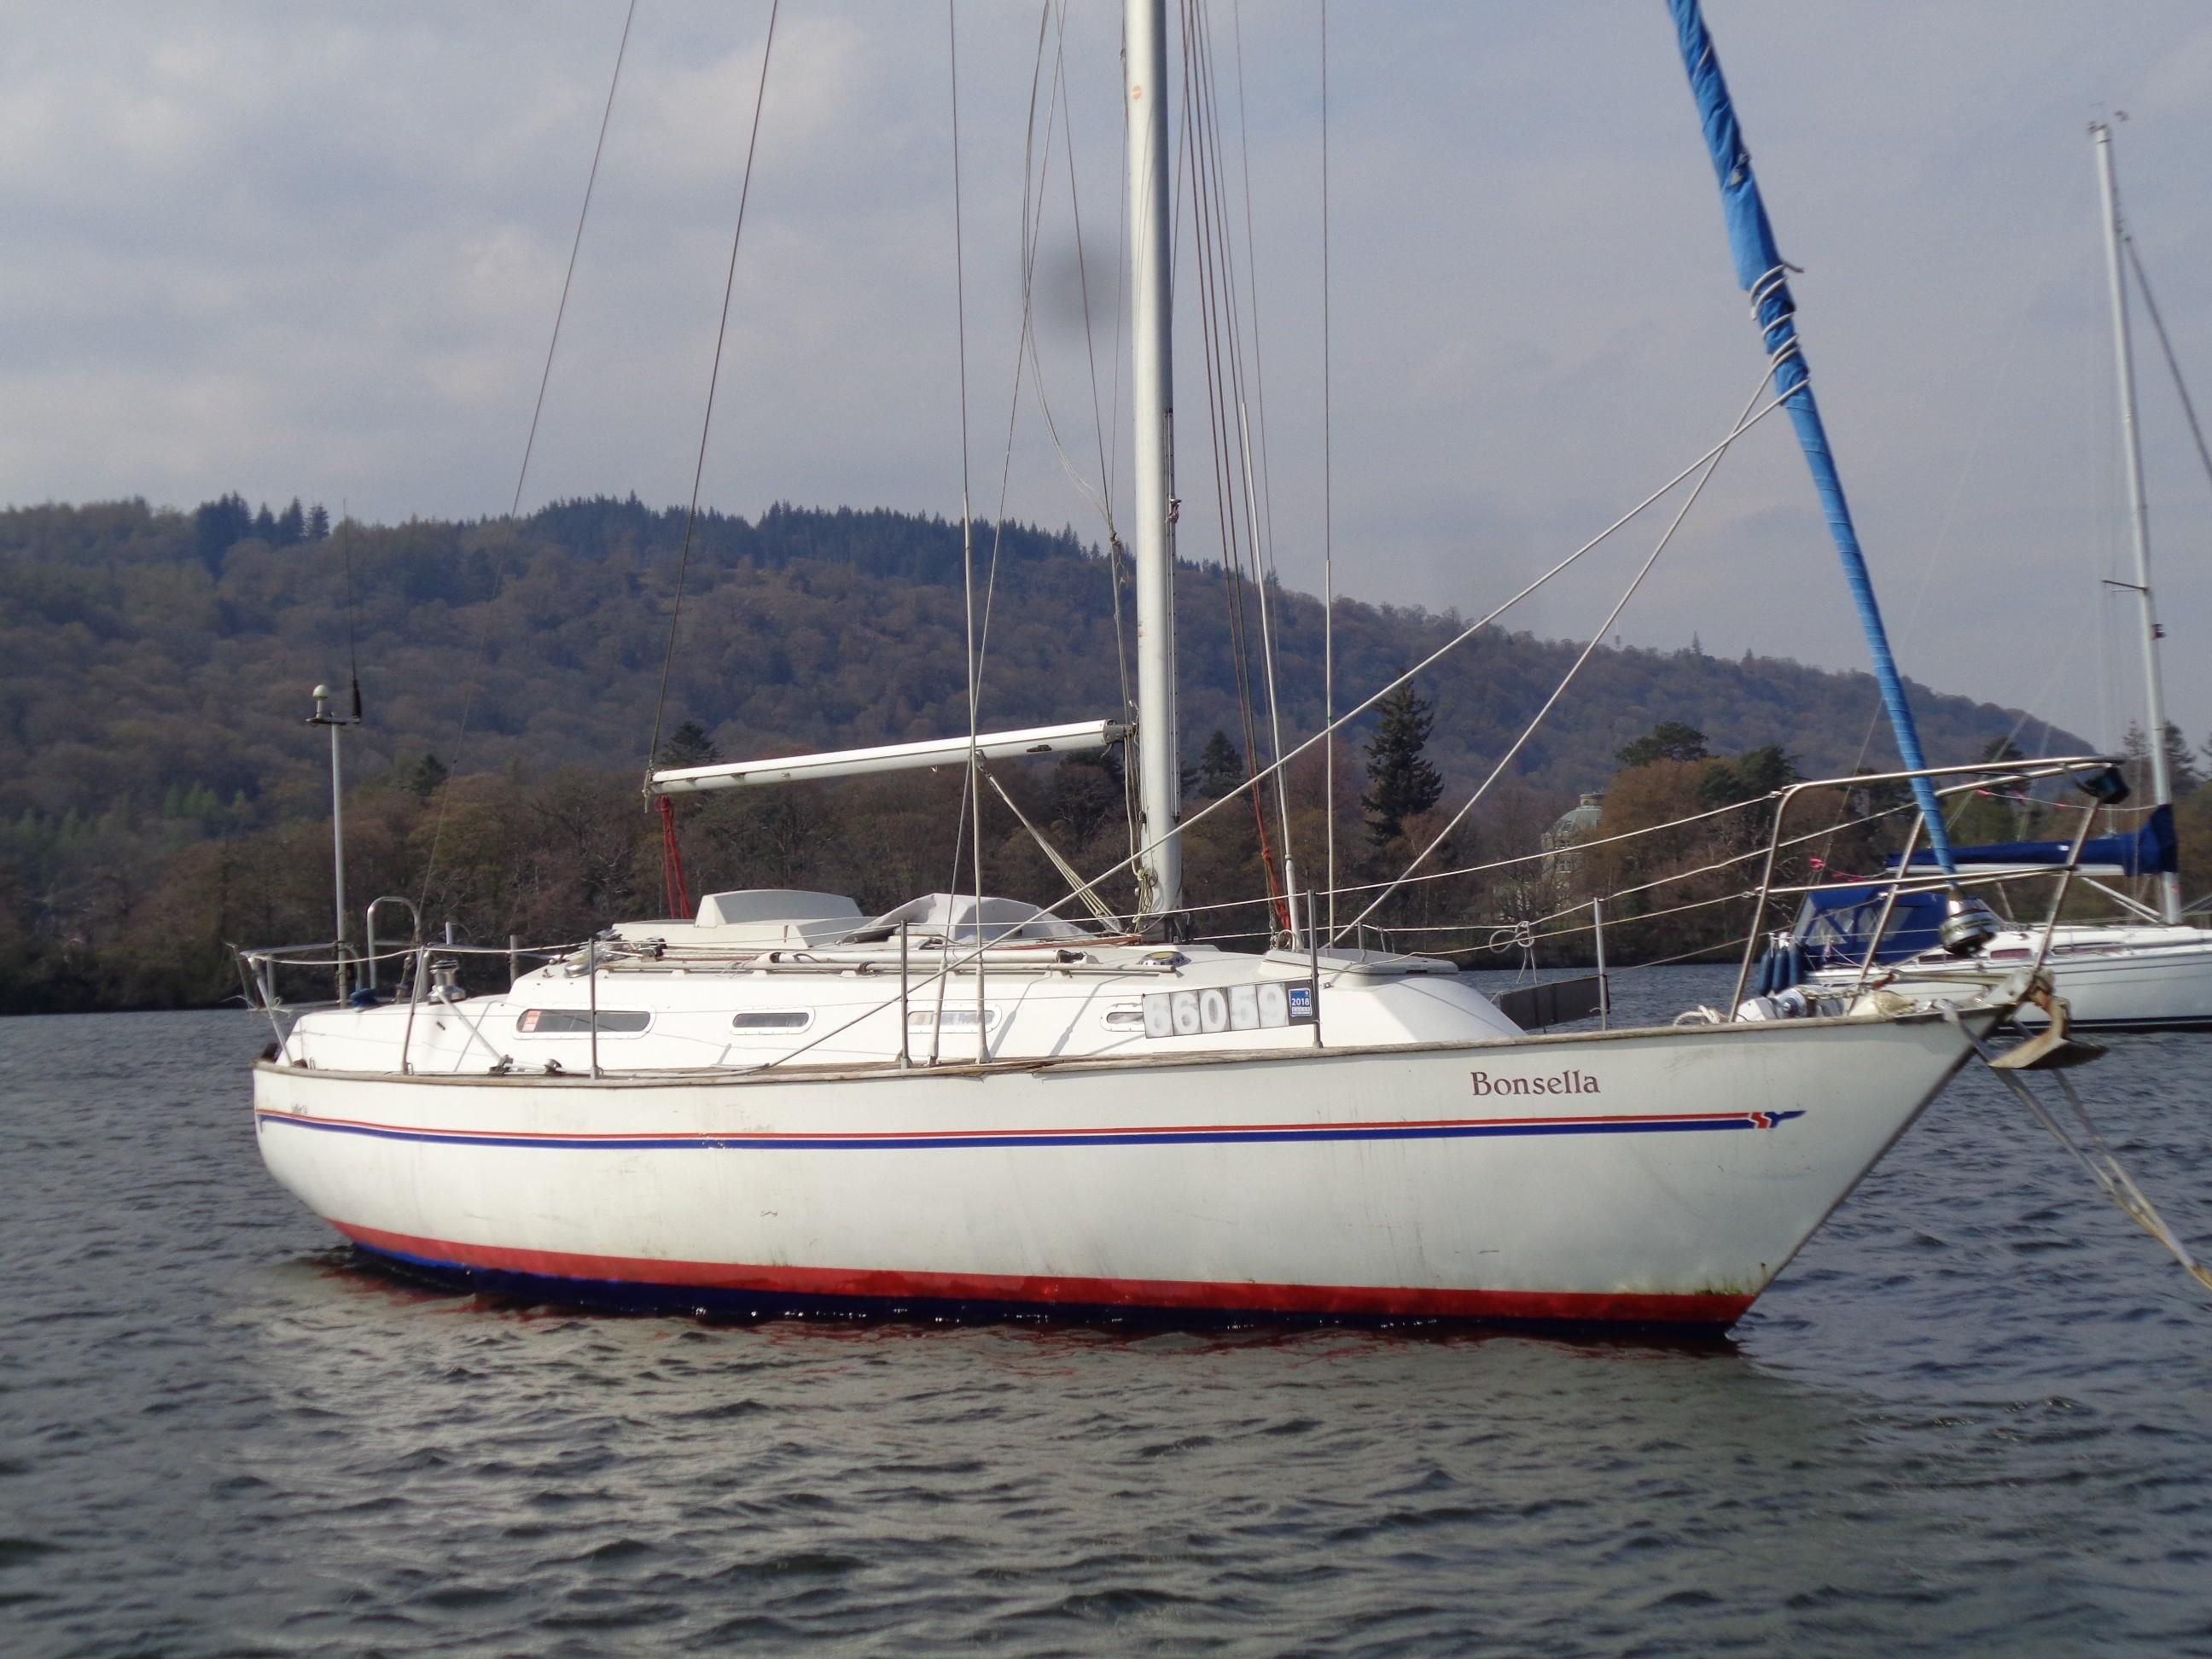 sadler yachts for sale uk